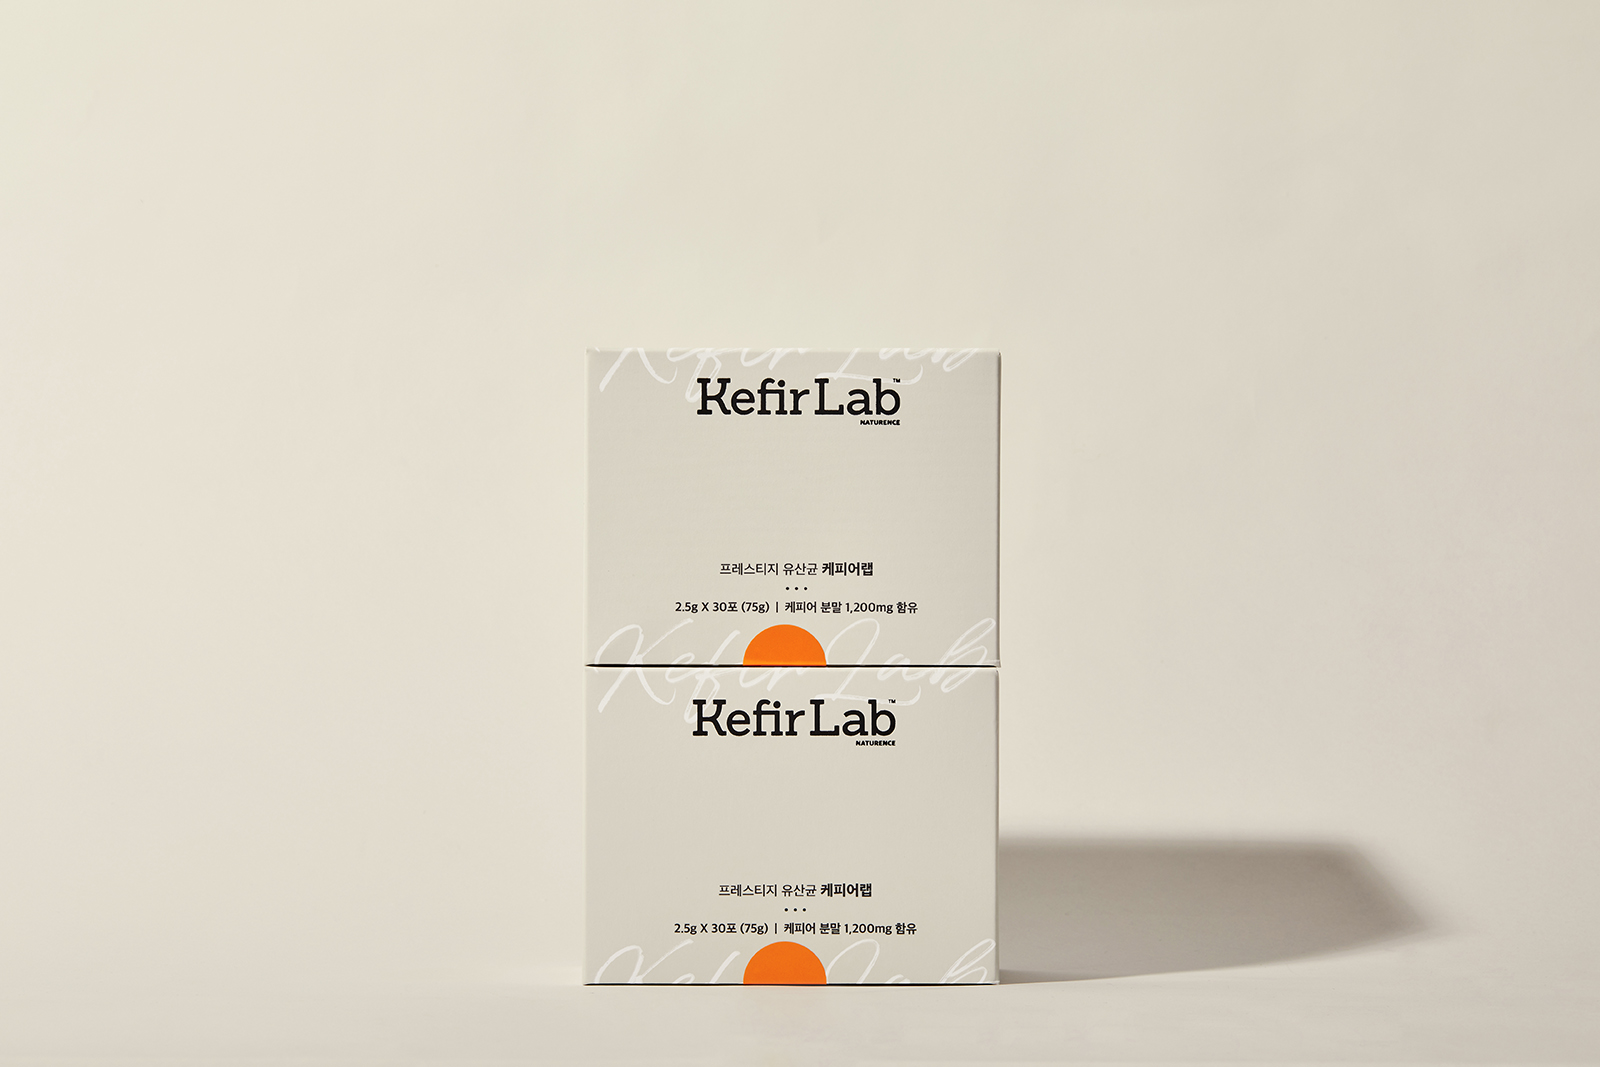 Kefir Lap Branding and Packaging by Long&Short